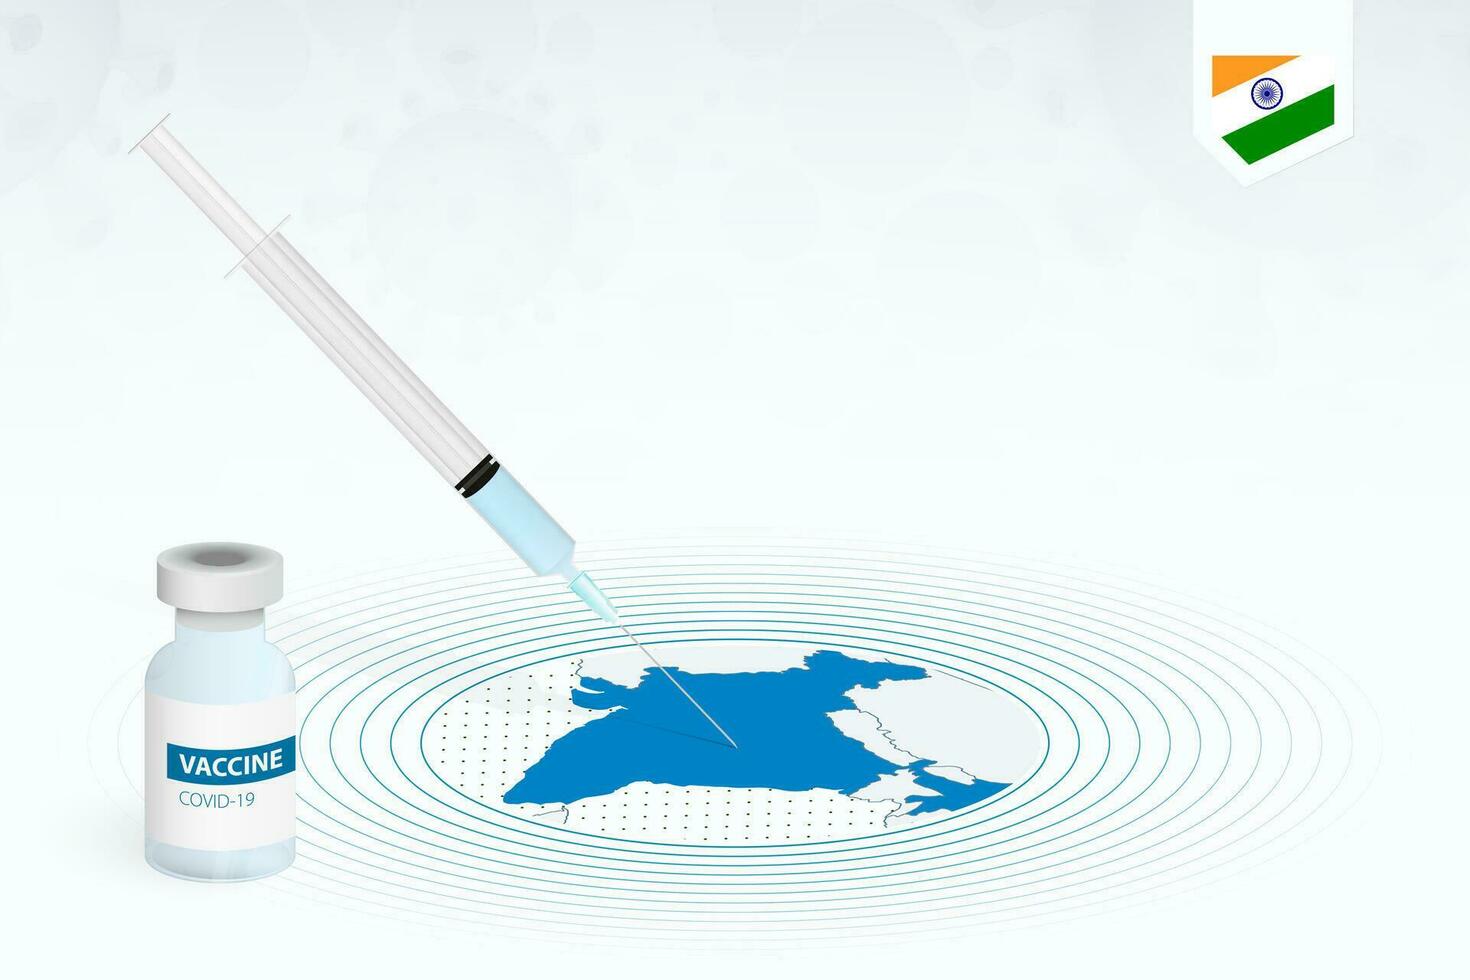 covid-19 vacinação dentro Índia, coronavírus vacinação ilustração com vacina garrafa e seringa injeção dentro mapa do Índia. vetor